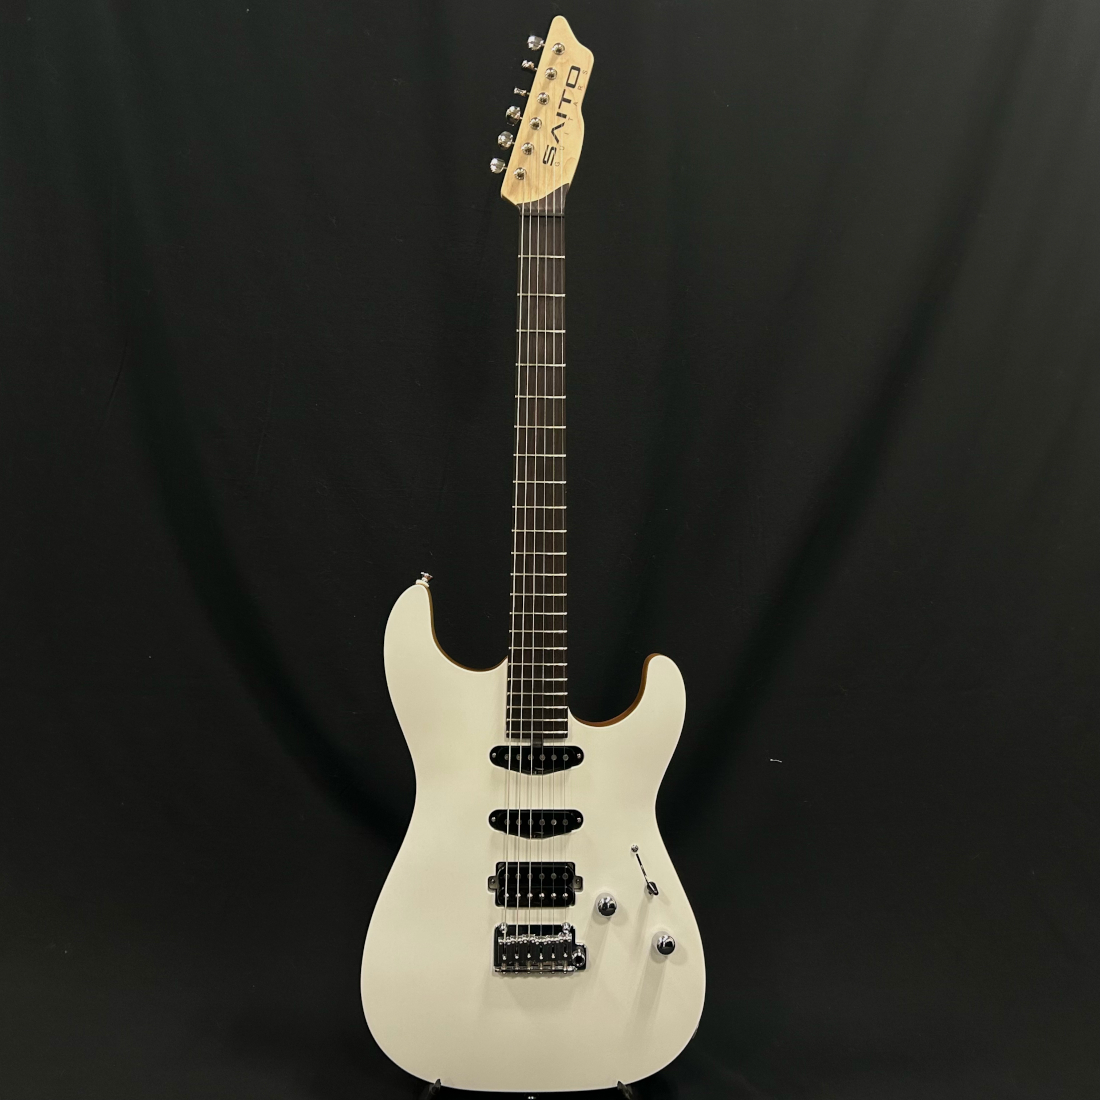 SAITO Guitars S-622 Chamonix White 齋藤楽器工房 サイトーギター